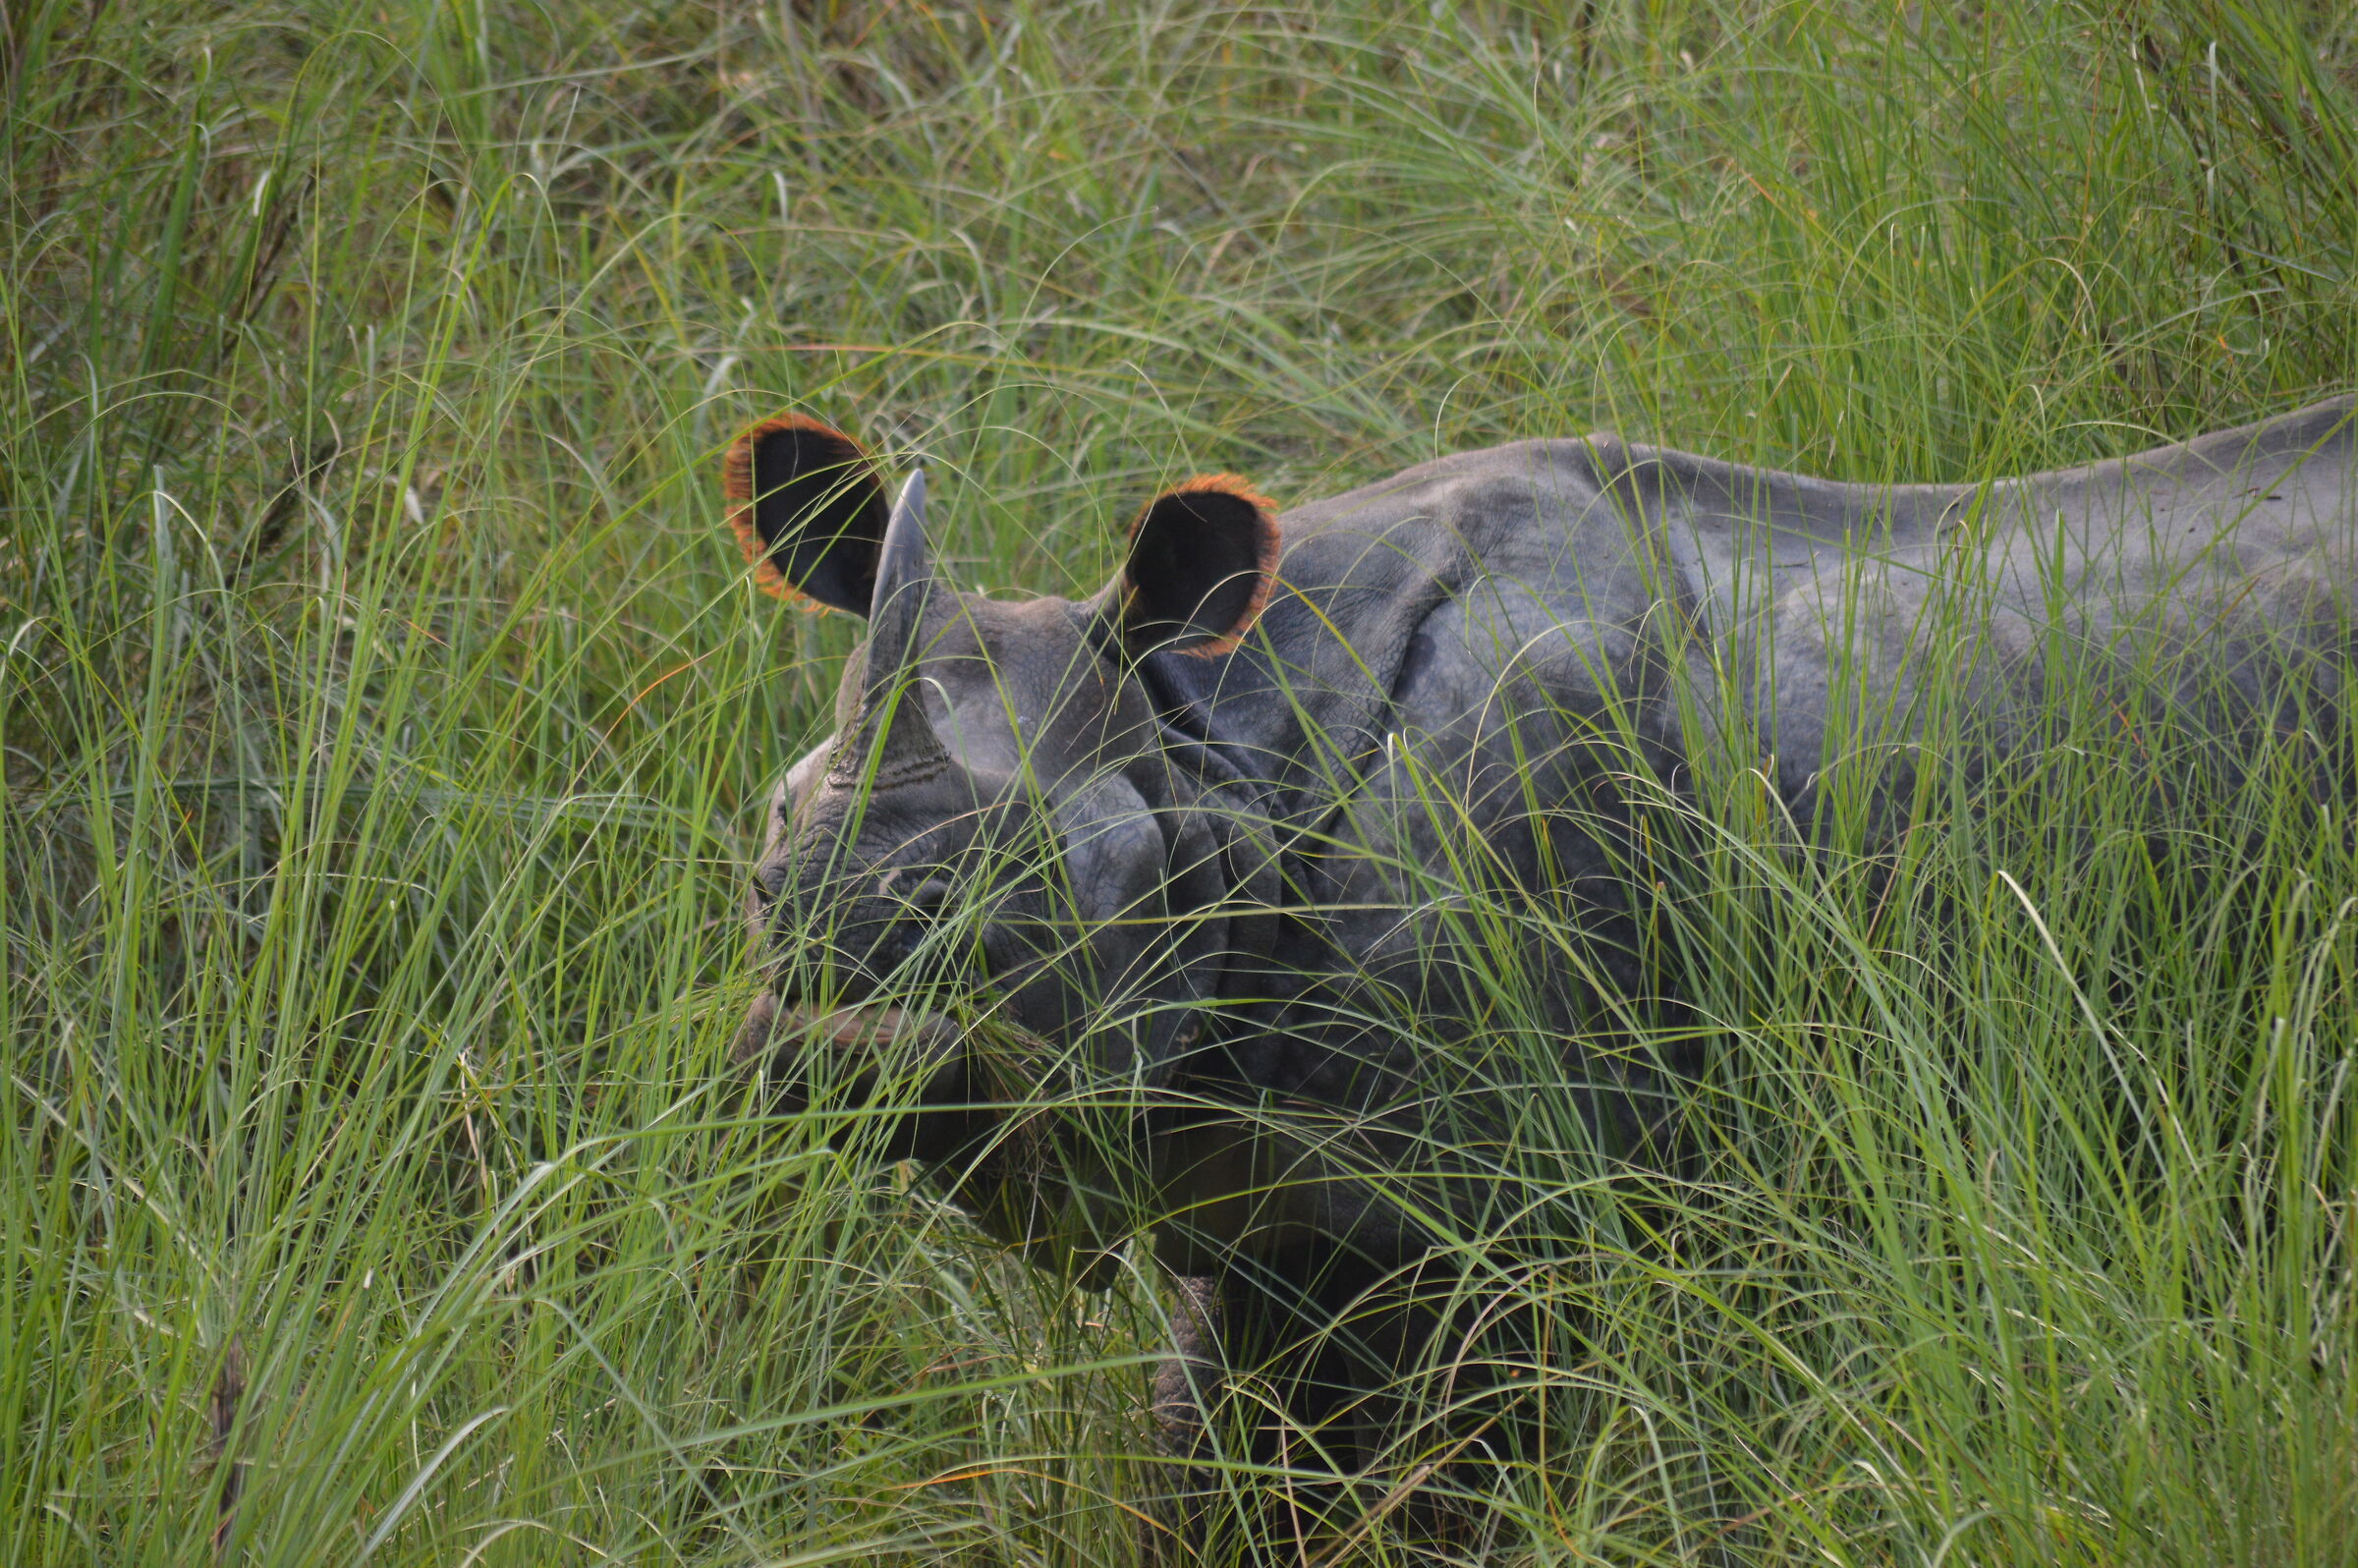 Indian rhino...